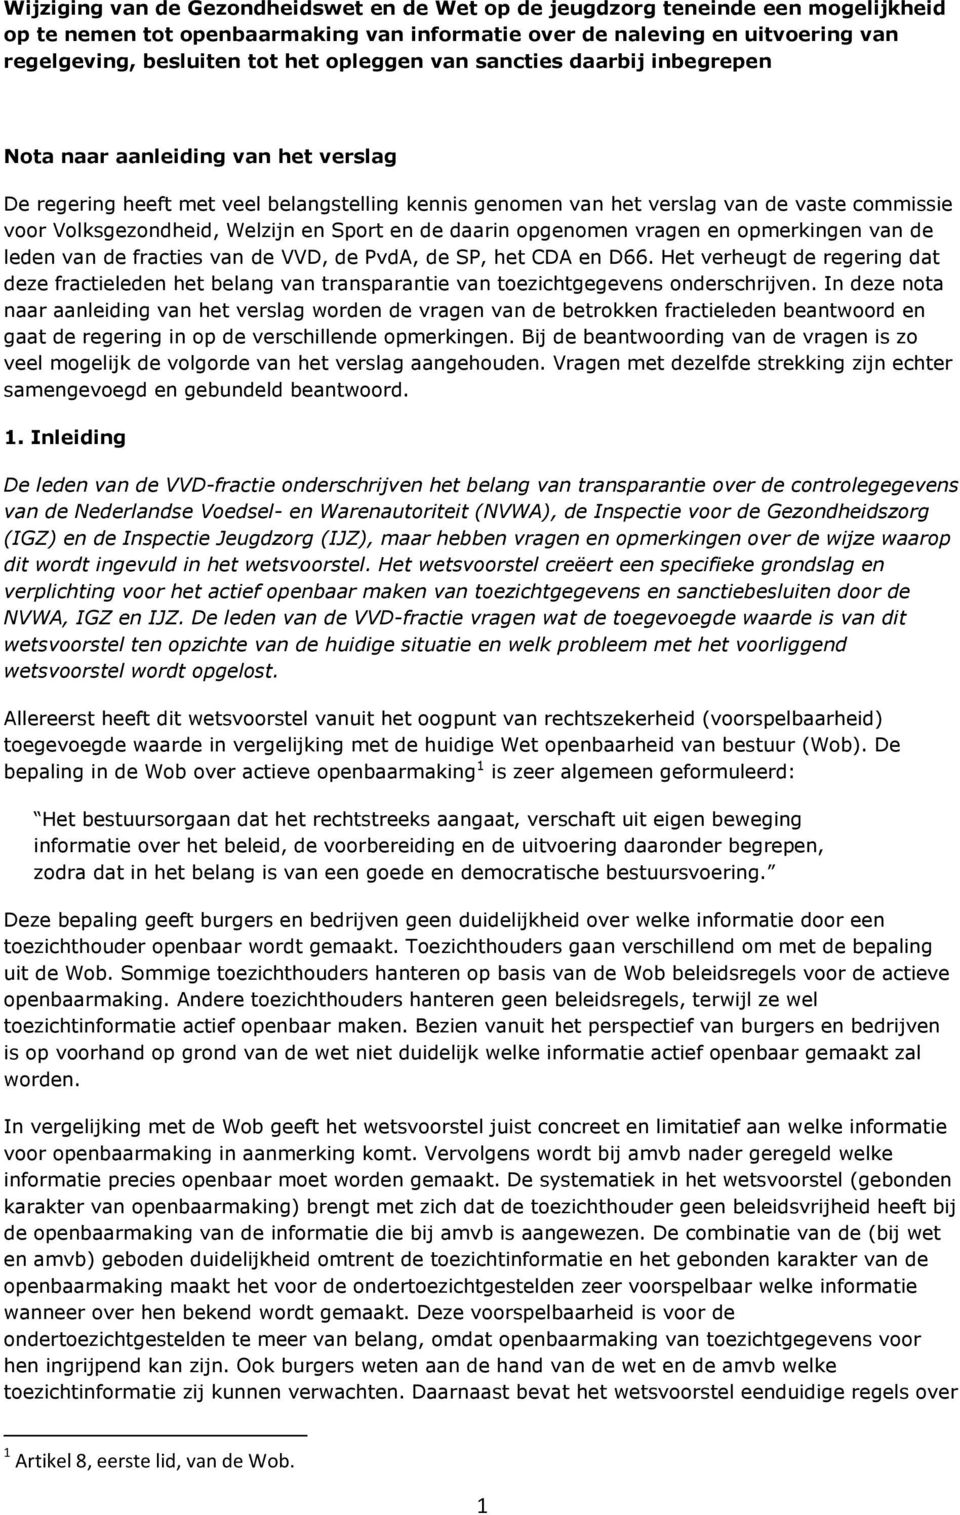 Welzijn en Sport en de daarin opgenomen vragen en opmerkingen van de leden van de fracties van de VVD, de PvdA, de SP, het CDA en D66.